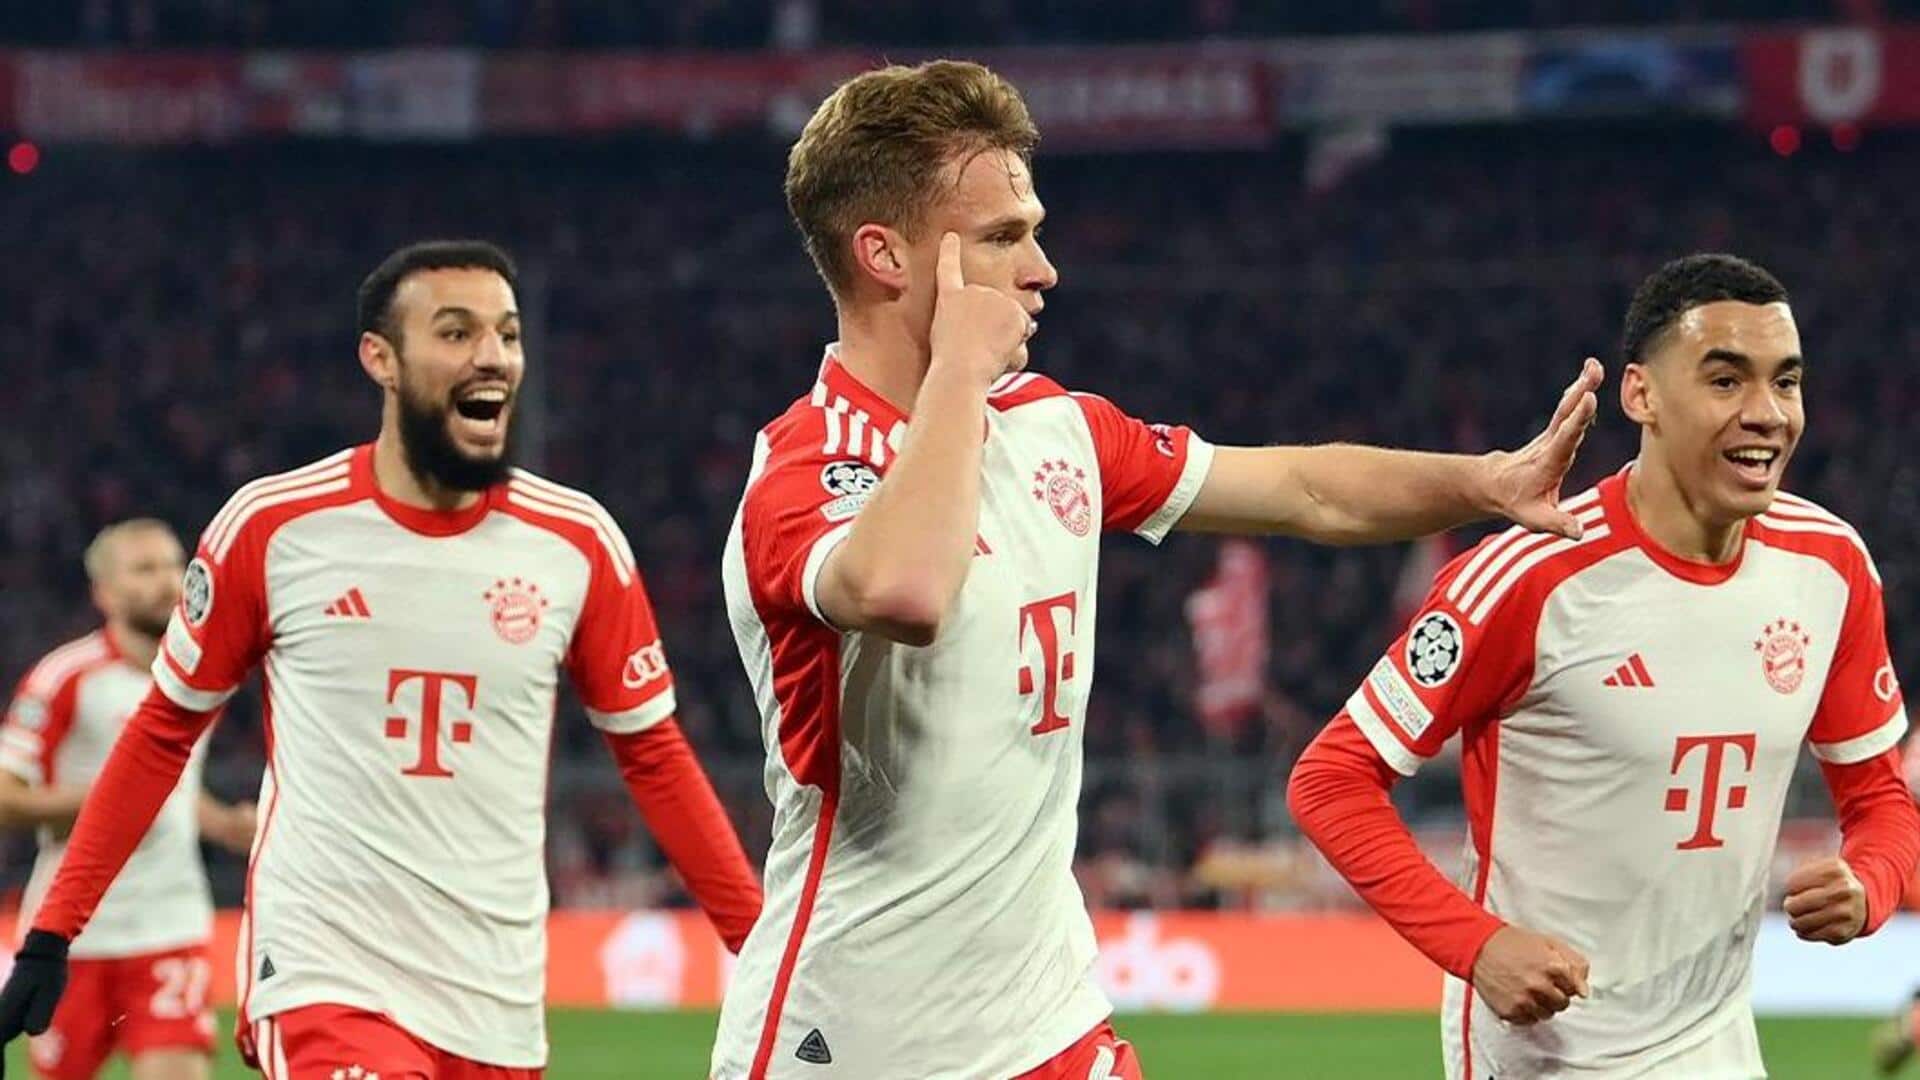 Bayern Munich beat Arsenal to reach Champions League semis: Stats